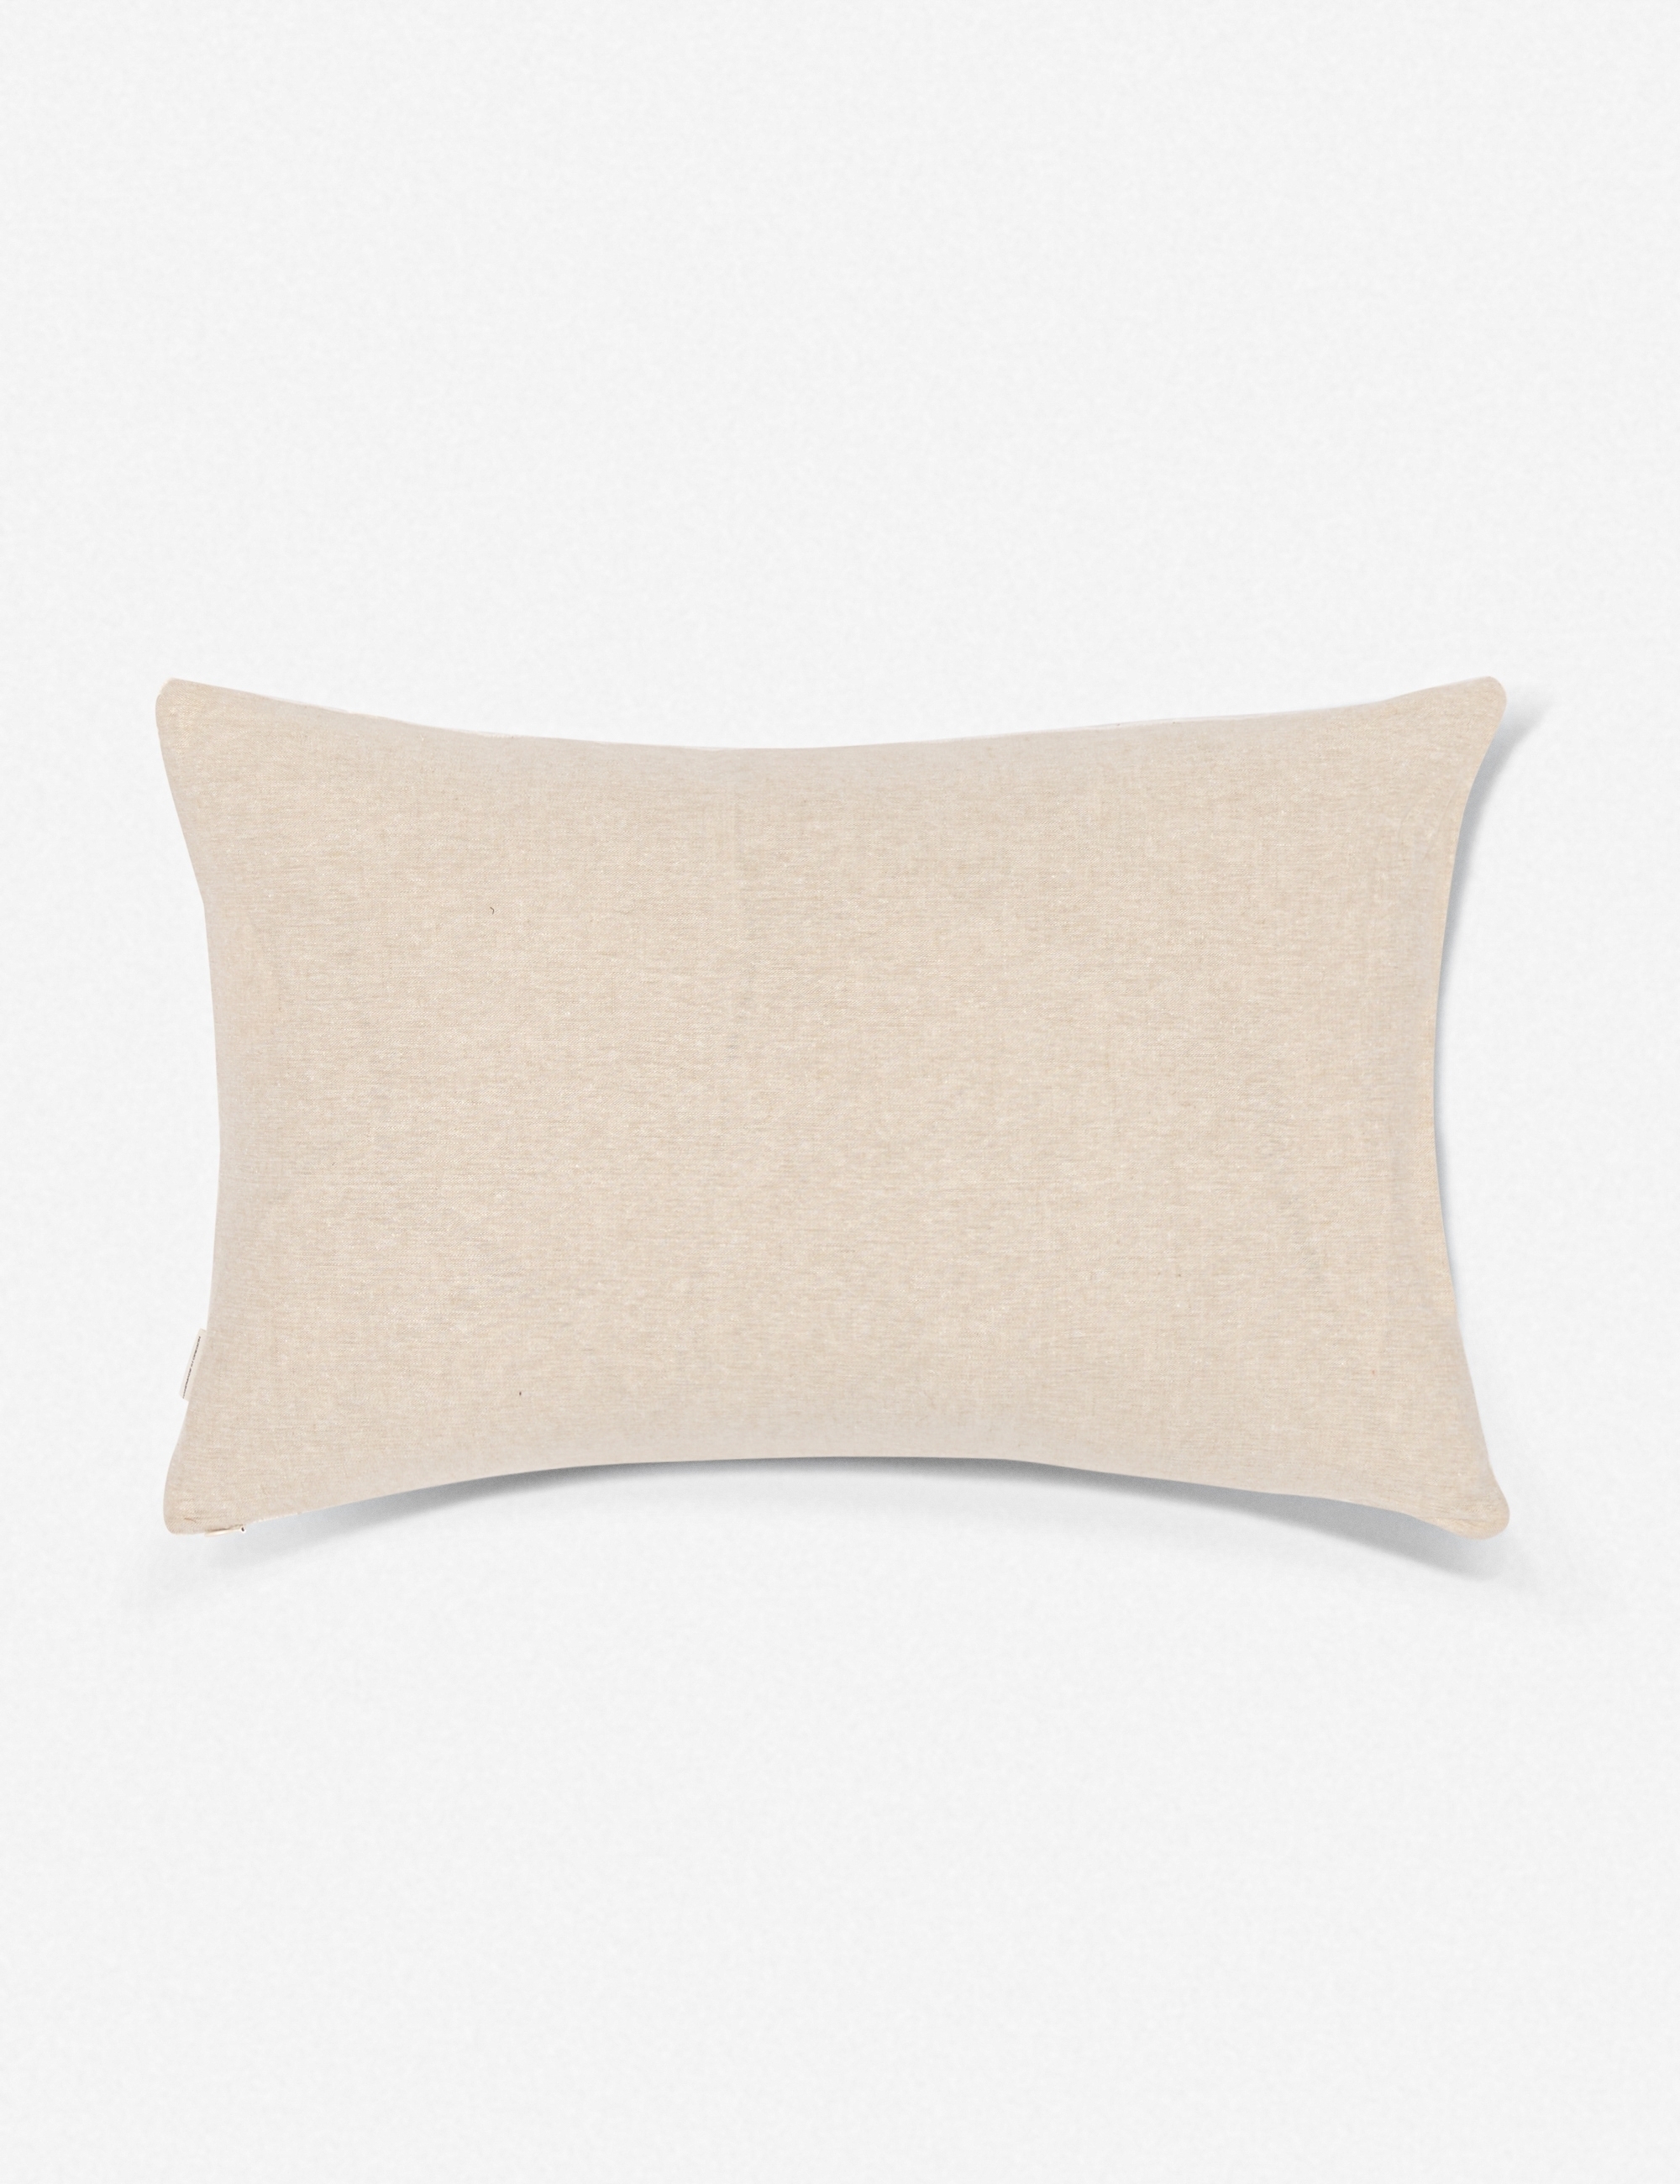 Norala Mudcloth Lumbar Pillow - Image 3